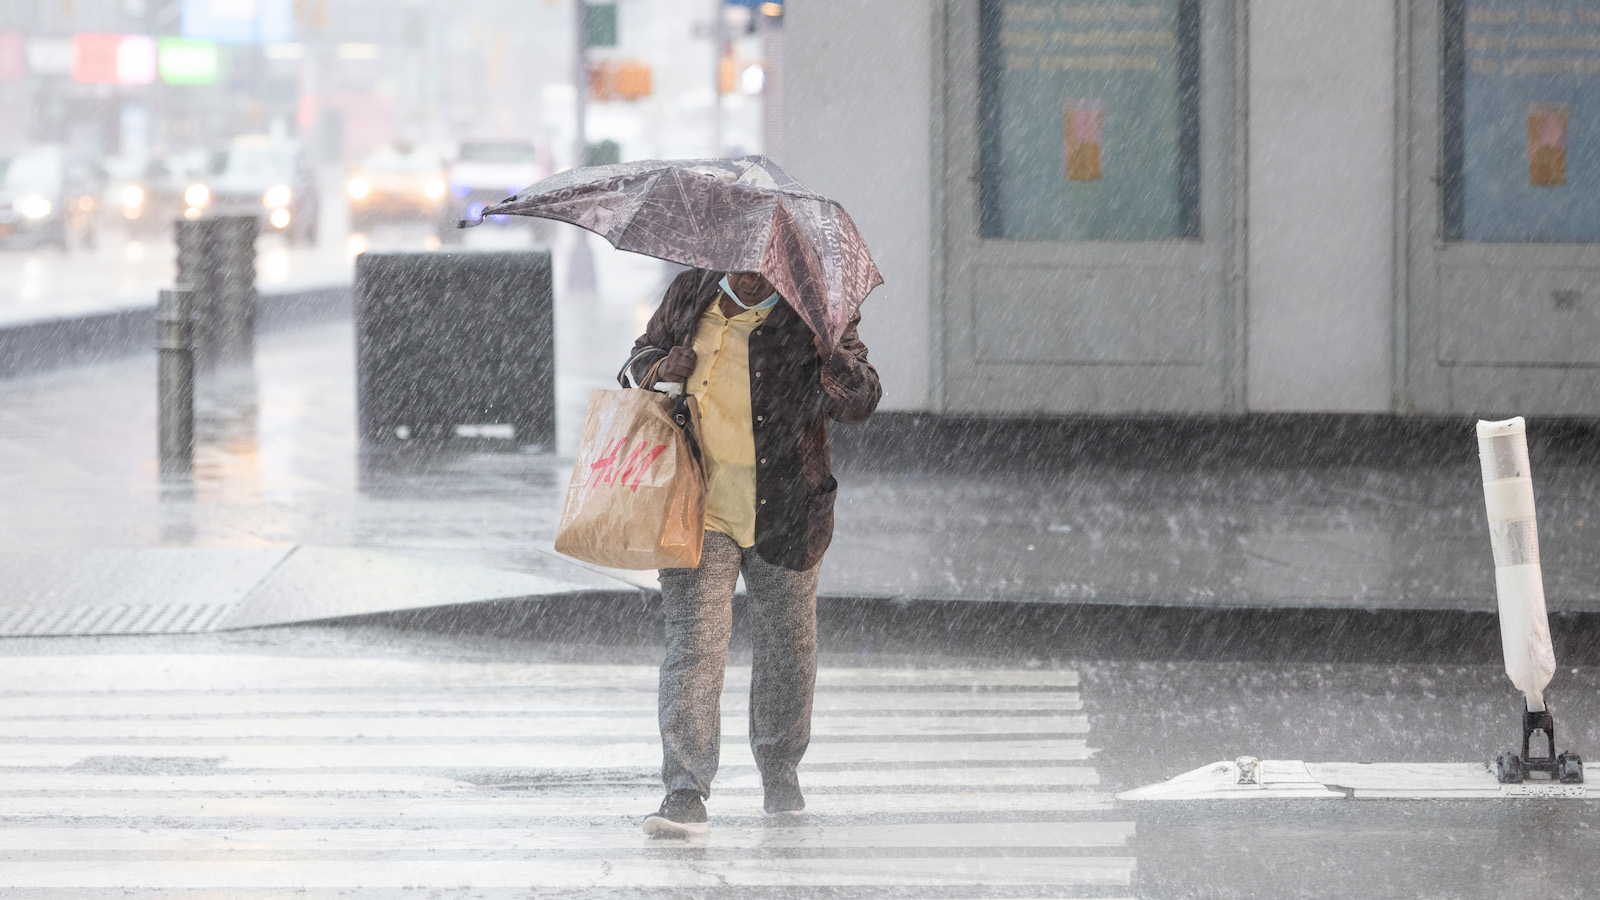 A woman with a broken umbrella walks through heavy rain